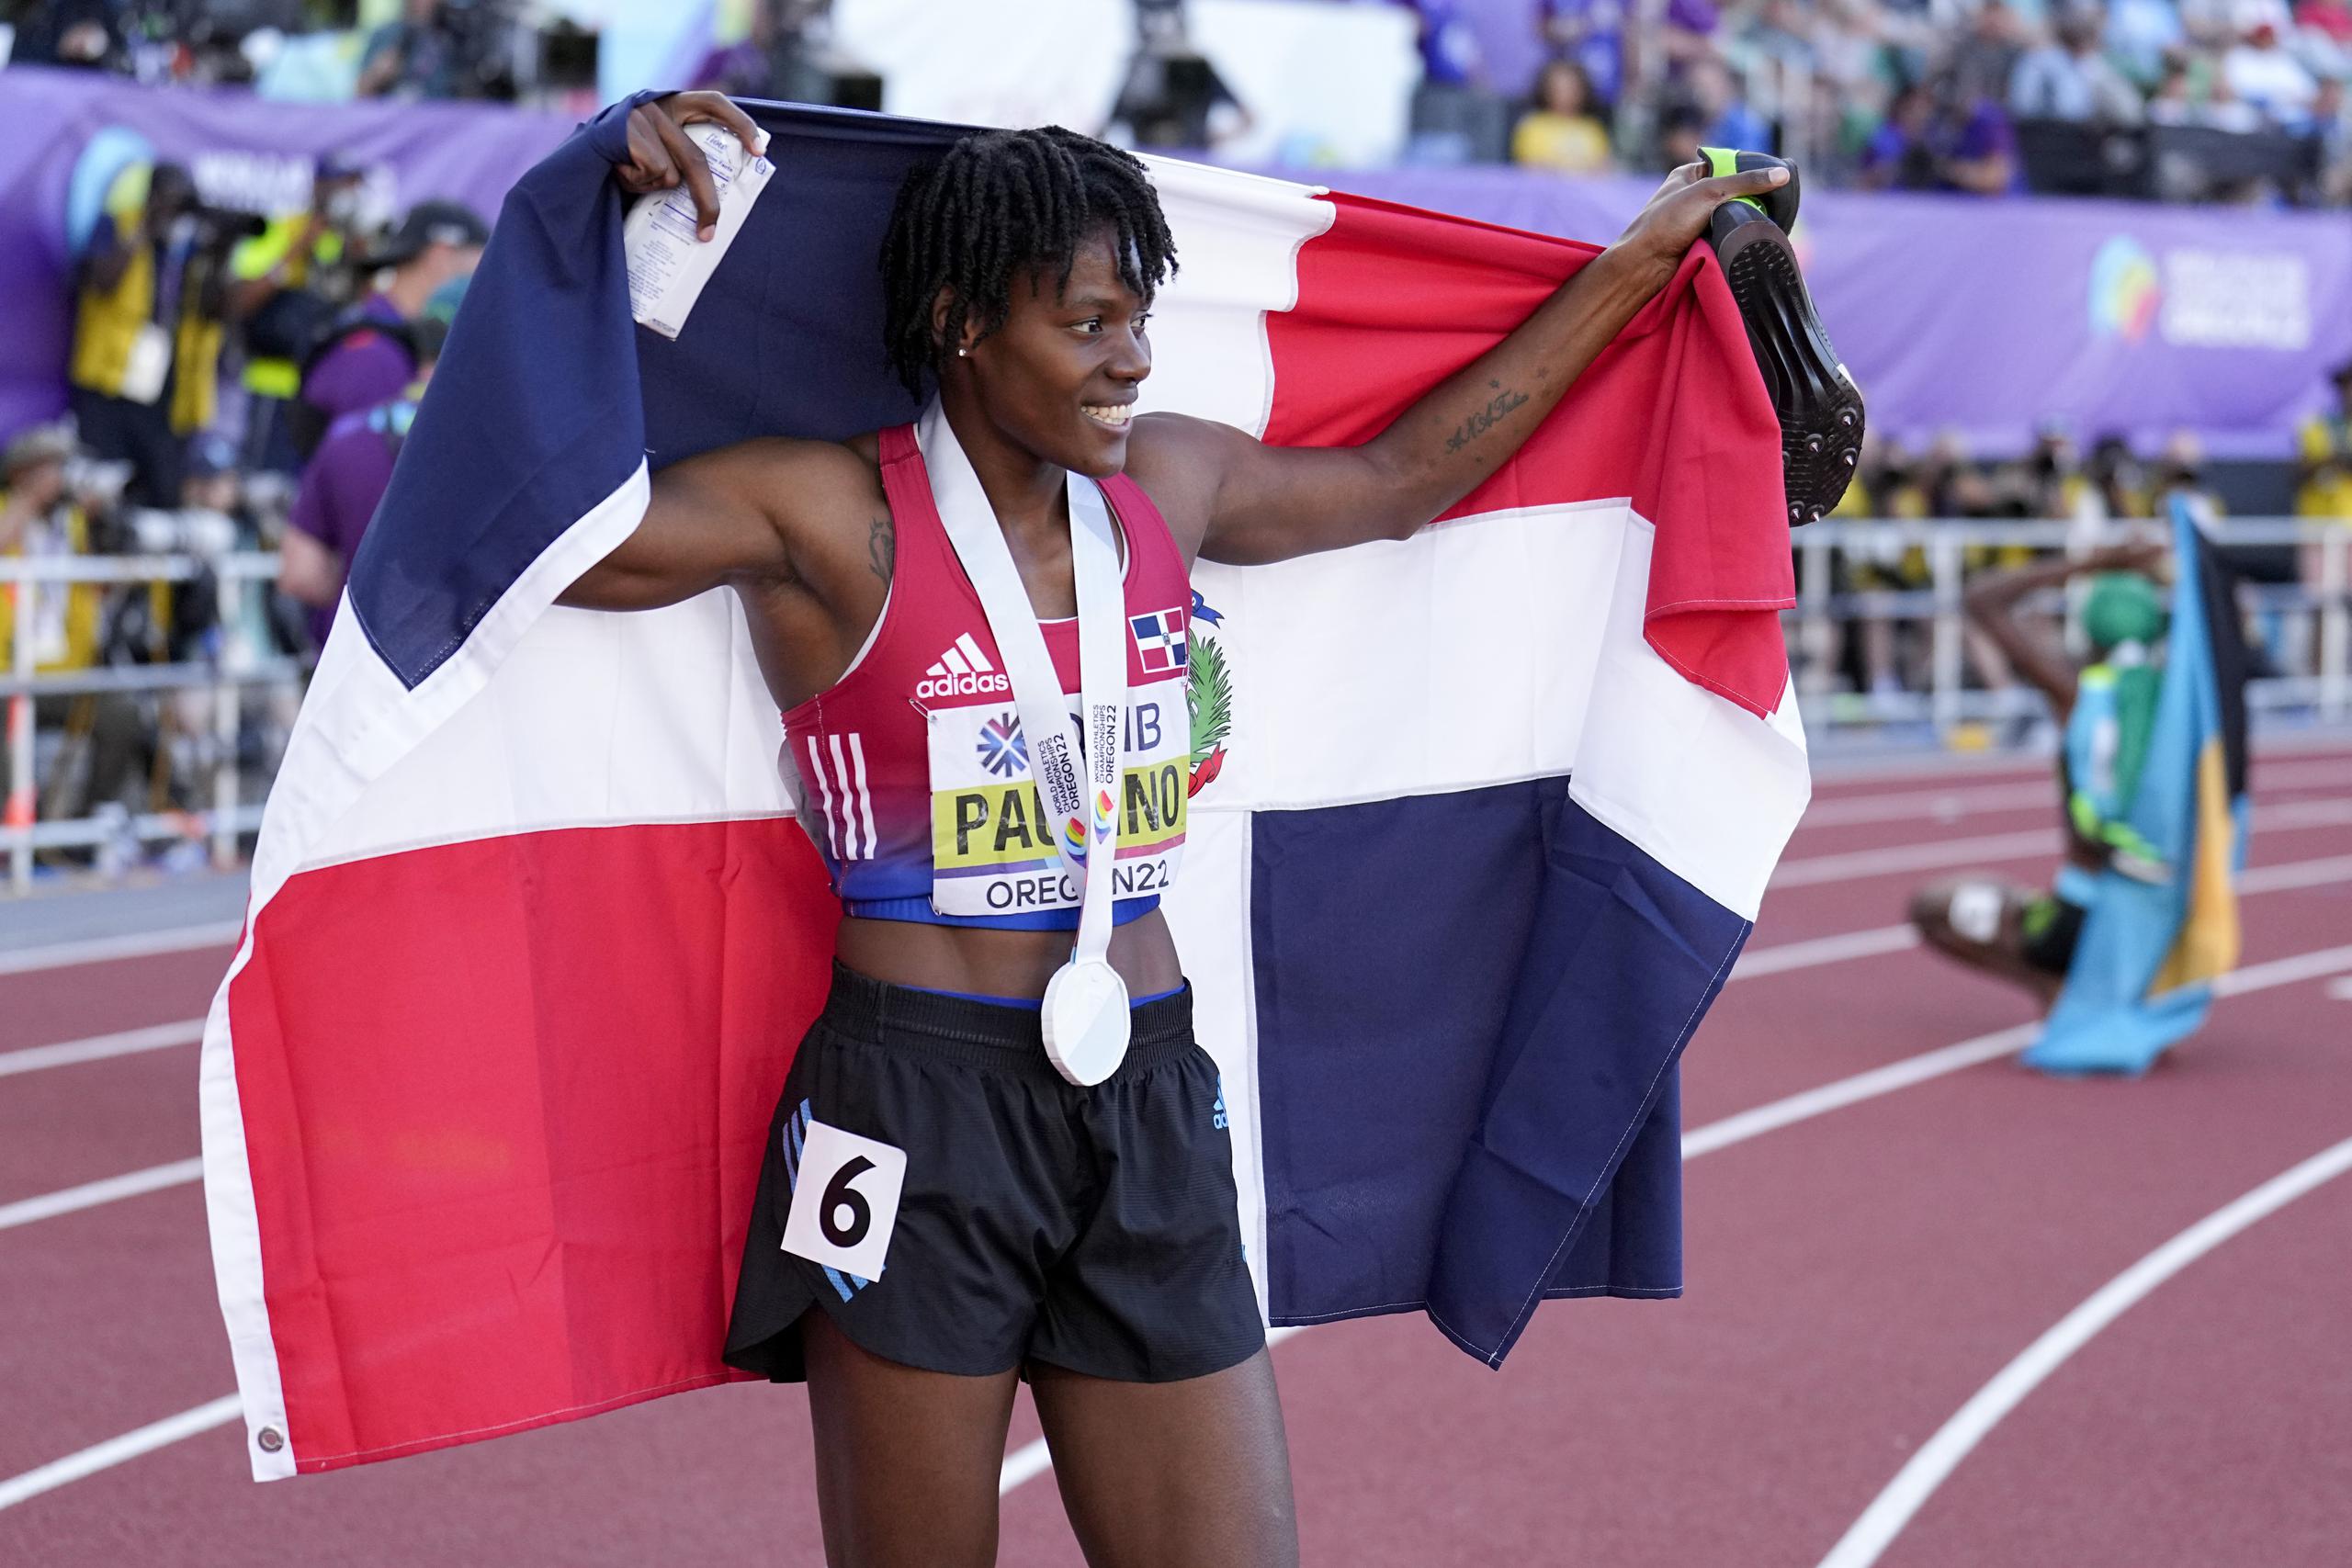 La dominicana Marileidy Paulino festeja con su bandera tras conseguir la medalla de plata en los 400 metros, durante el Mundial de Atletismo en Eugene, Oregon.